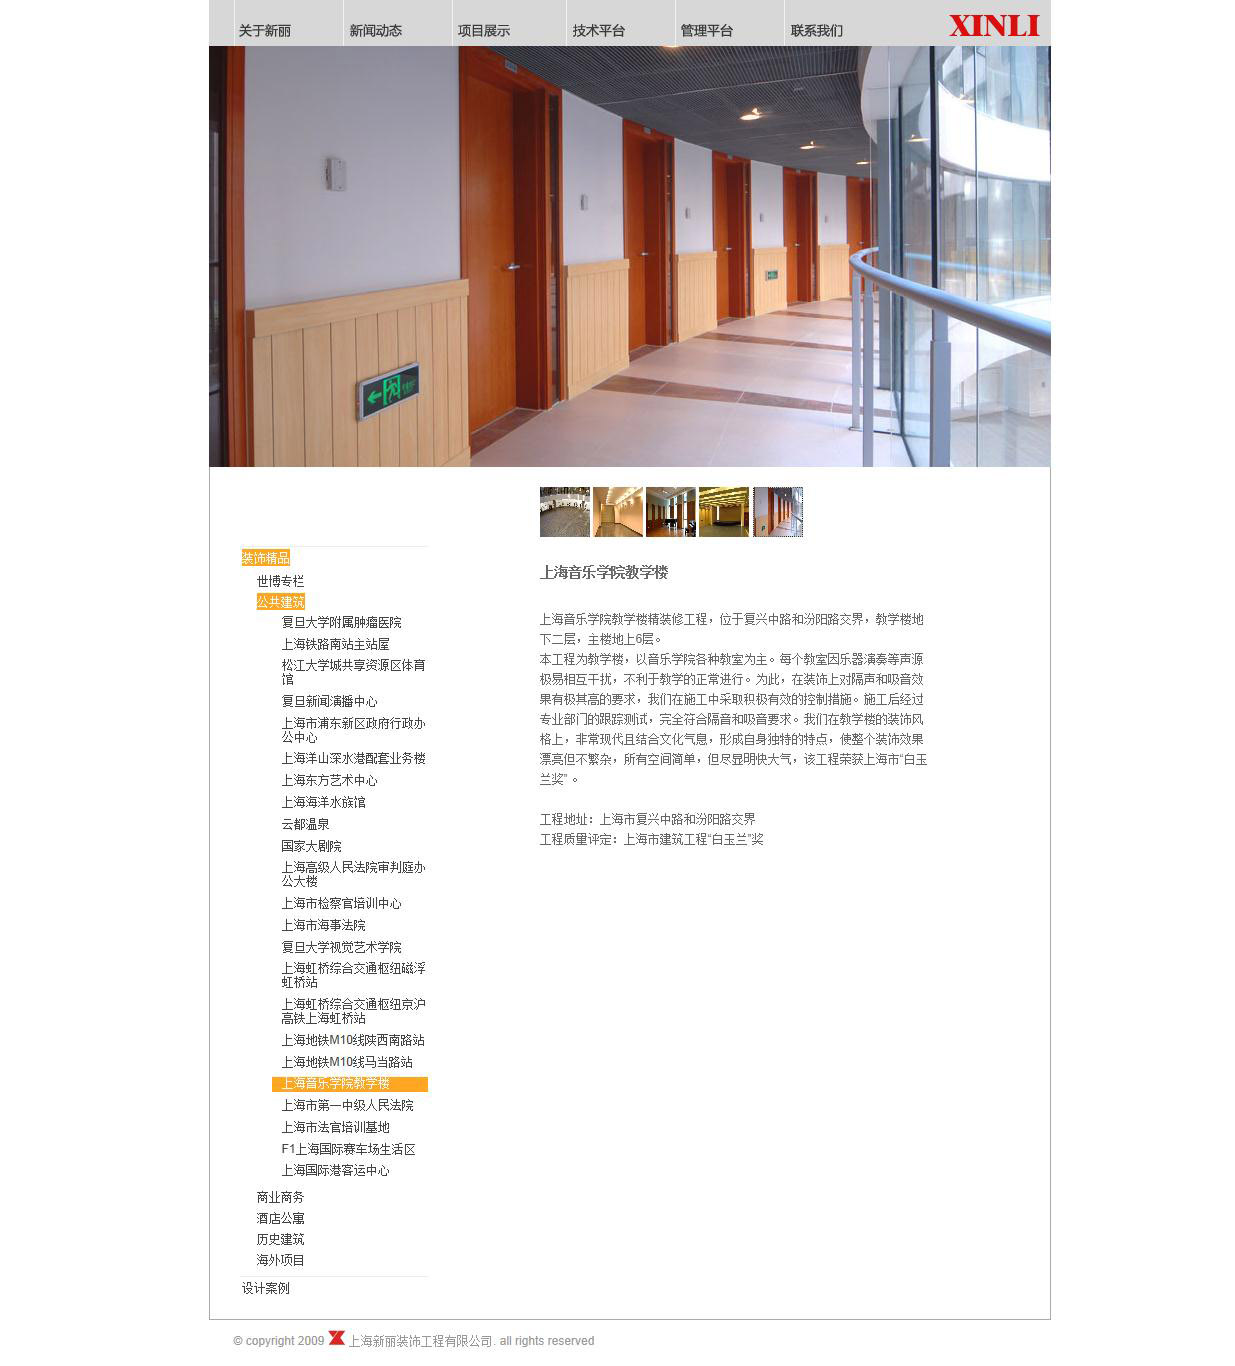 上海音乐学院教学楼  公共建筑   上海新丽装饰工程有限公司